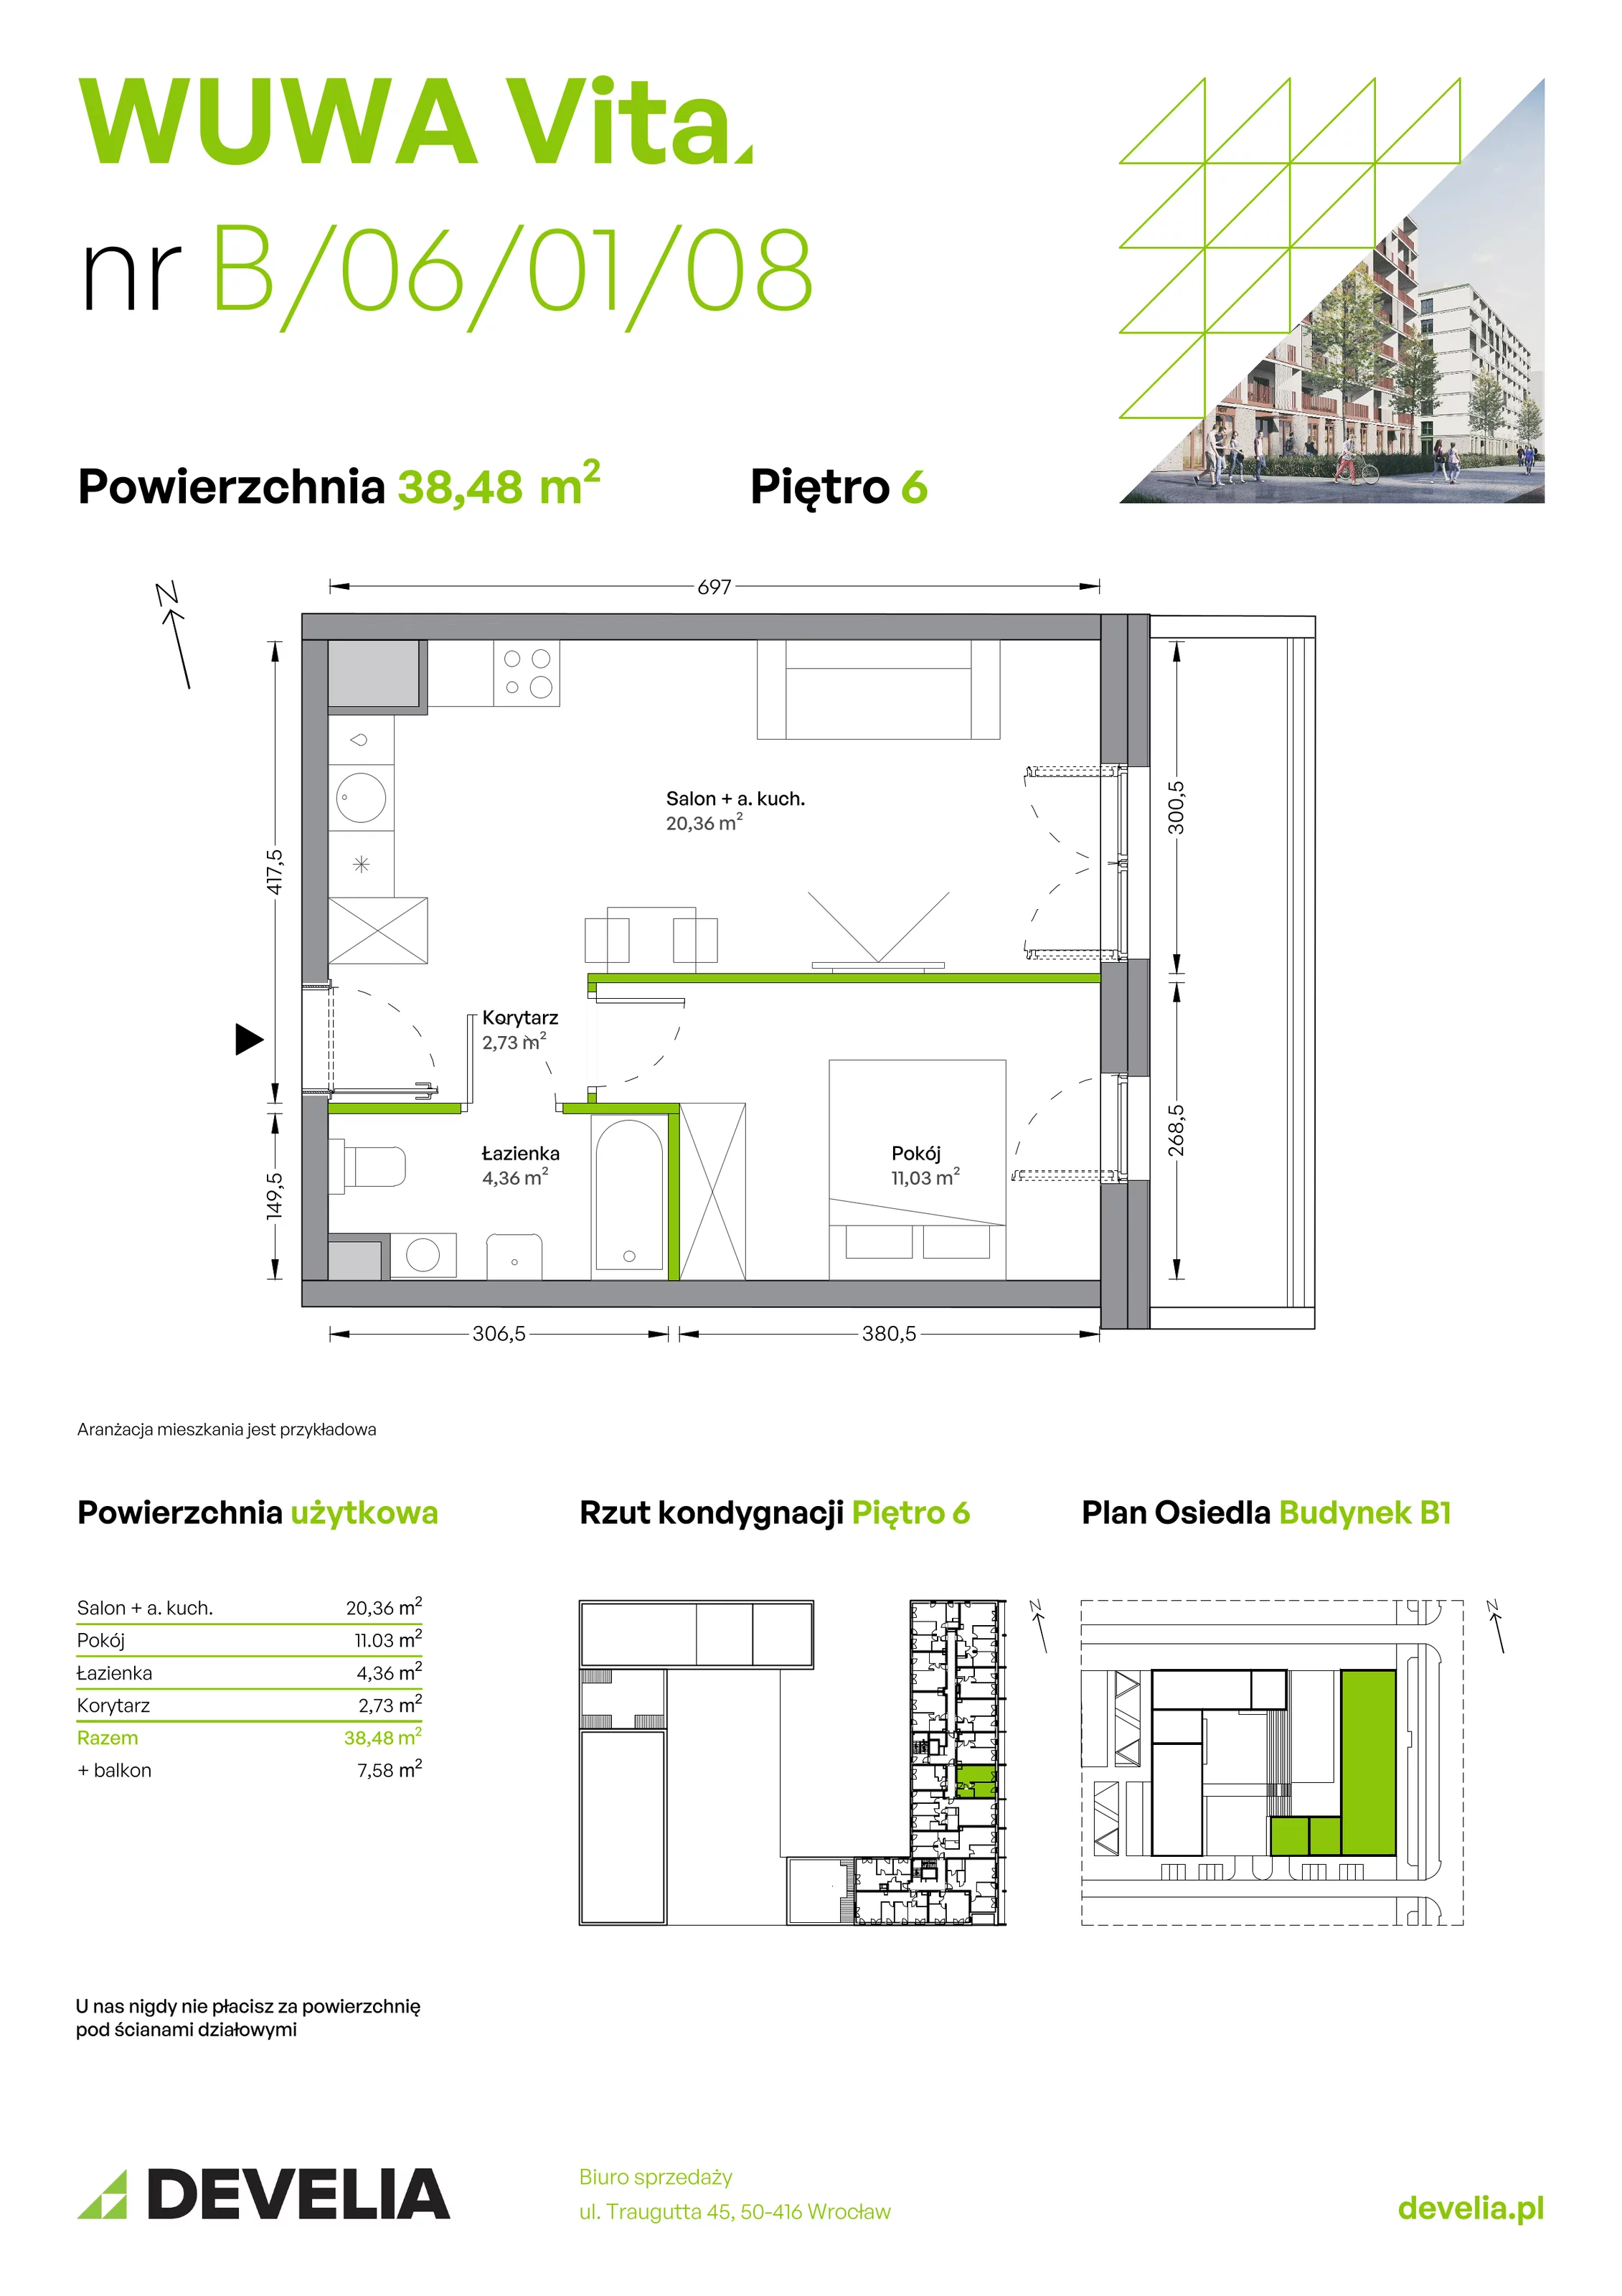 Mieszkanie 38,48 m², piętro 6, oferta nr B.06.01.08, WUWA Vita, Wrocław, Żerniki, Fabryczna, ul. Tadeusza Brzozy